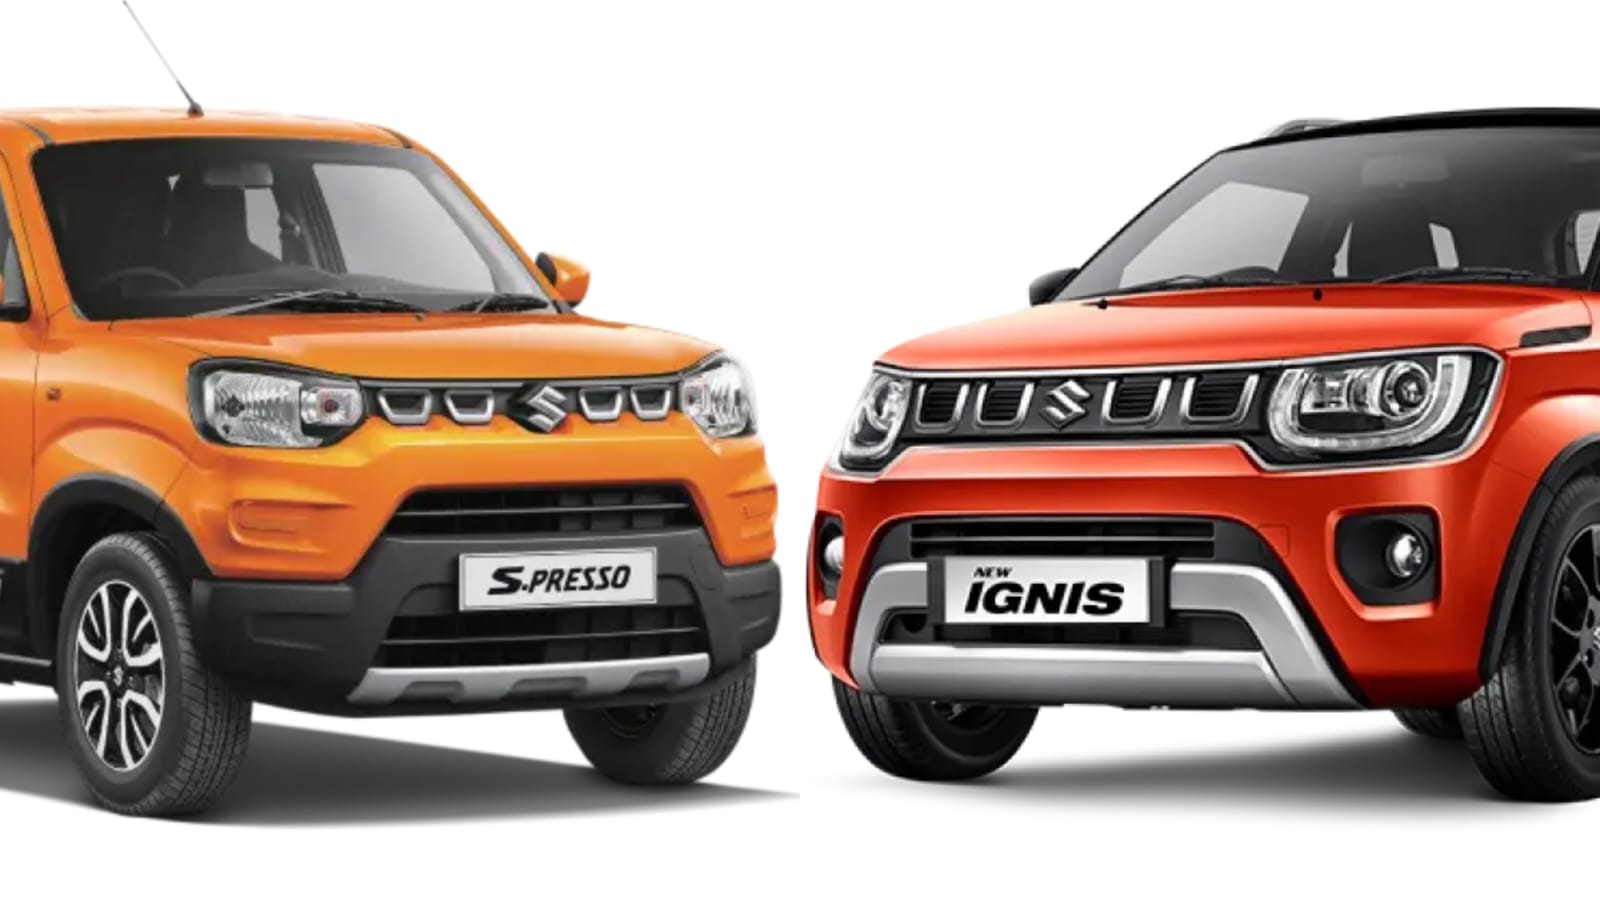 Perbandingan Mobil Suzuki New Ignis Vs Suzuki S Presso, Mulai Mesin, Desain, Hingga Harga, Bagus yang Mana?